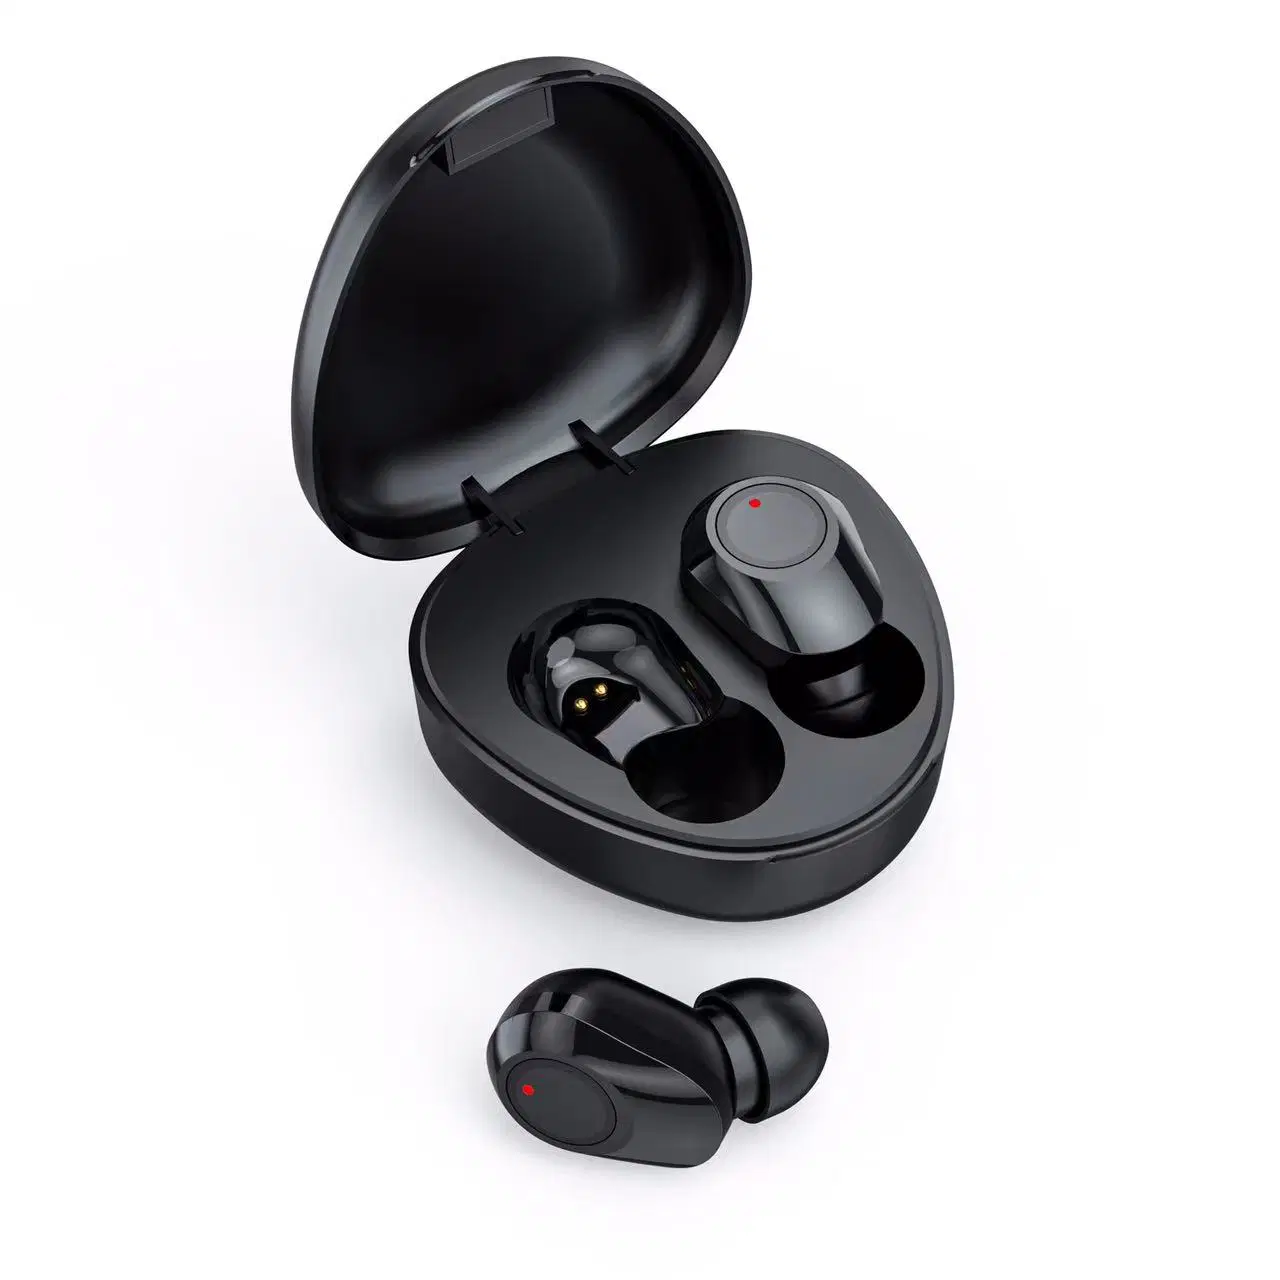 M9 auricular Bluetooth inalámbrico con pantalla digital espejo 3500mAh Banco de potencia auriculares auriculares inalámbricos auriculares para teléfonos móviles